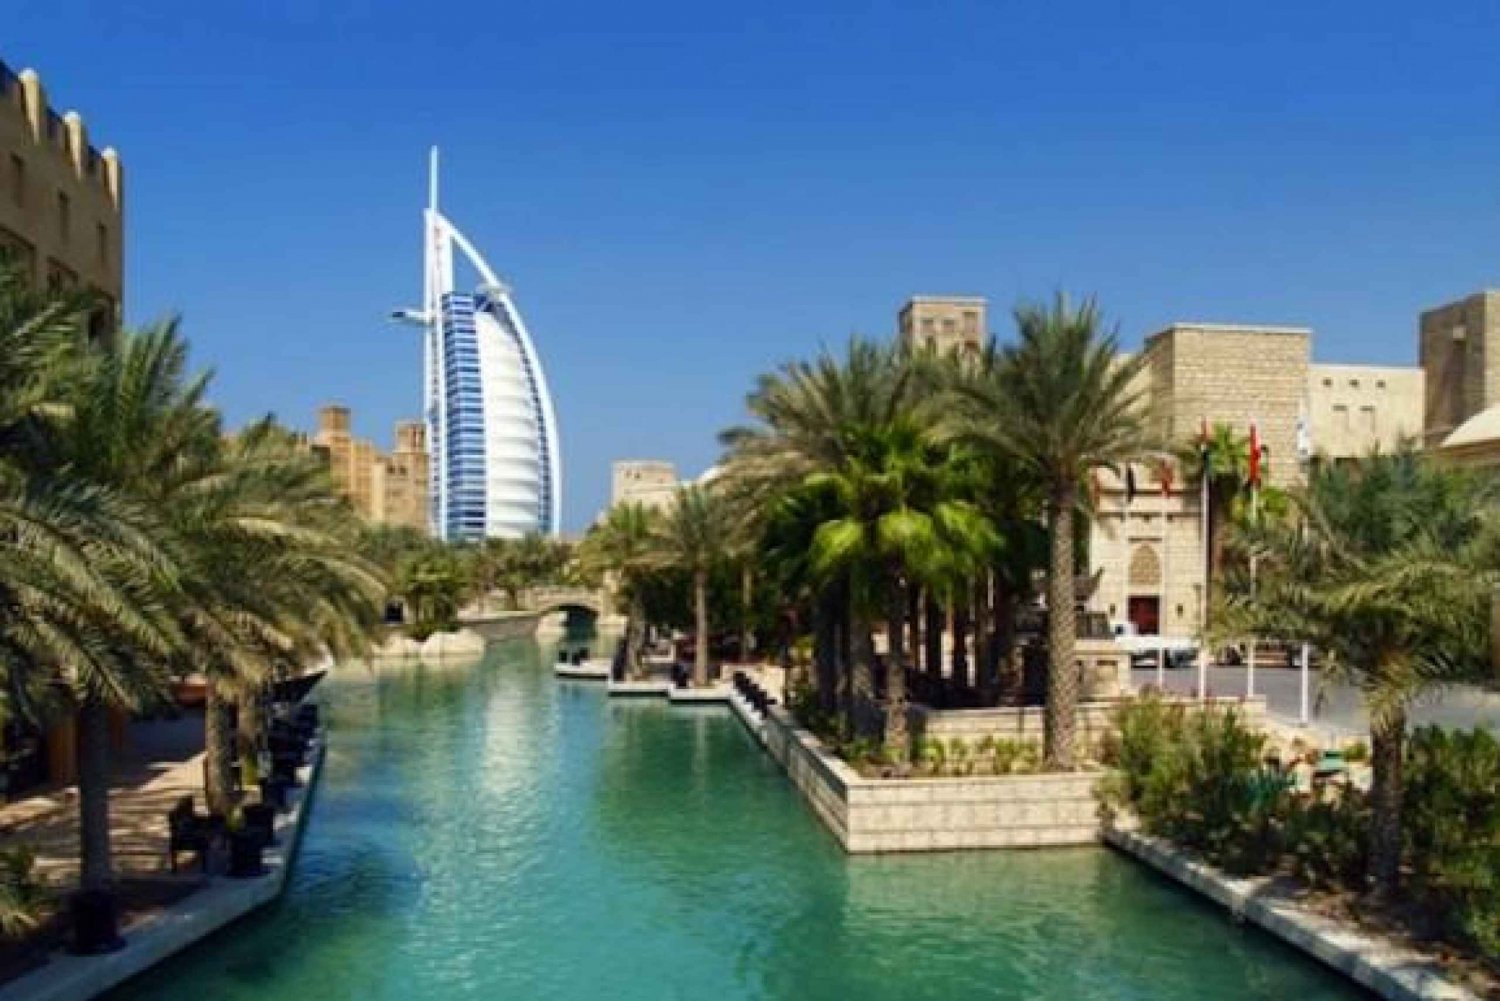 4-uur durende luxe Dubai-tour